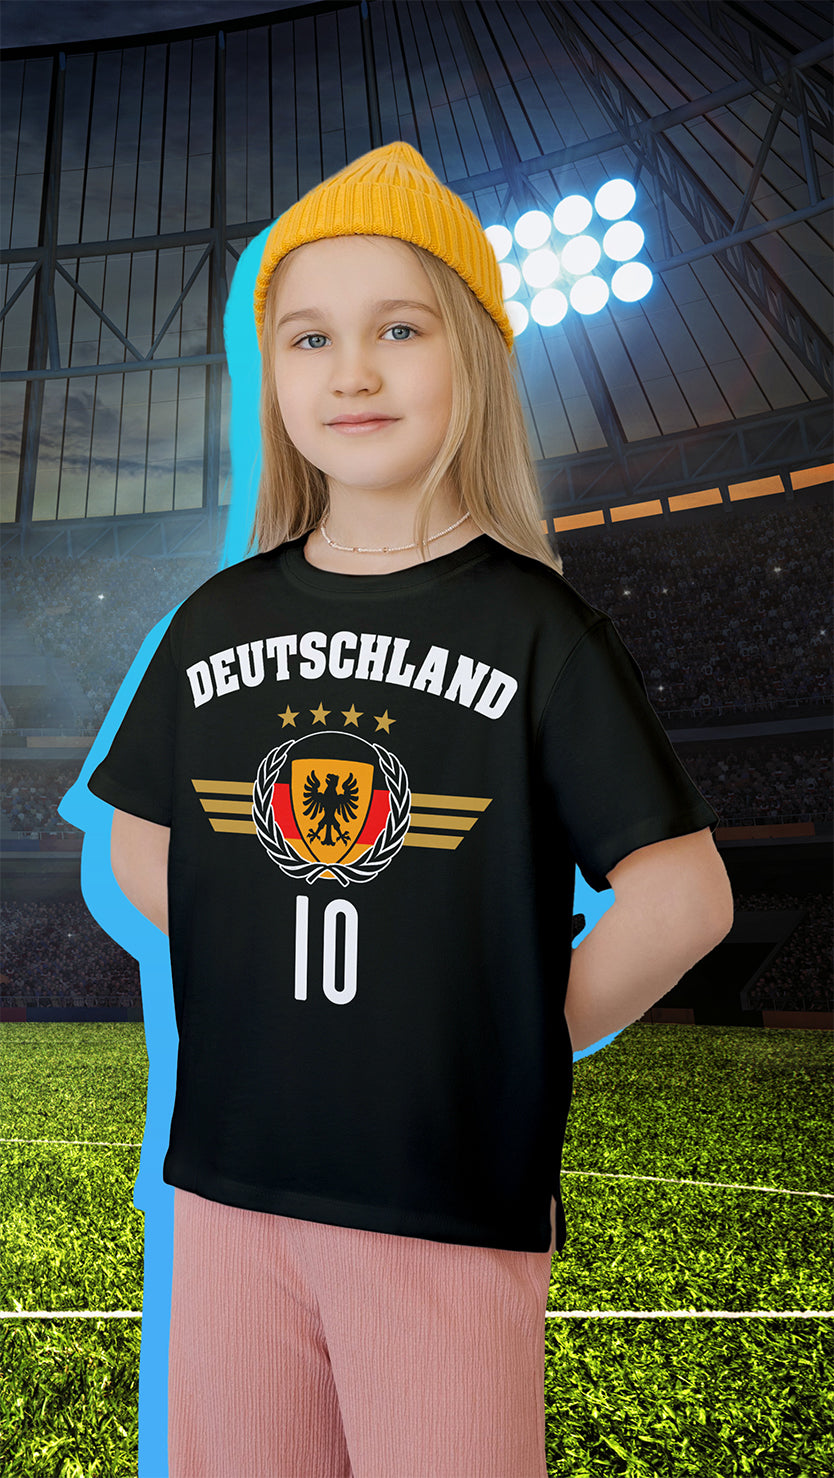 Kinder-T-Shirt für kleine EM 2024 Fans, farbenfroh gestaltet mit einem kinderfreundlichen Deutschland Fan-Motiv, das Spiel und Spaß rund um Fußball thematisiert. Perfekt für junge Sportfans, bietet es Bequemlichkeit und Haltbarkeit für Spiel und Freizeit.